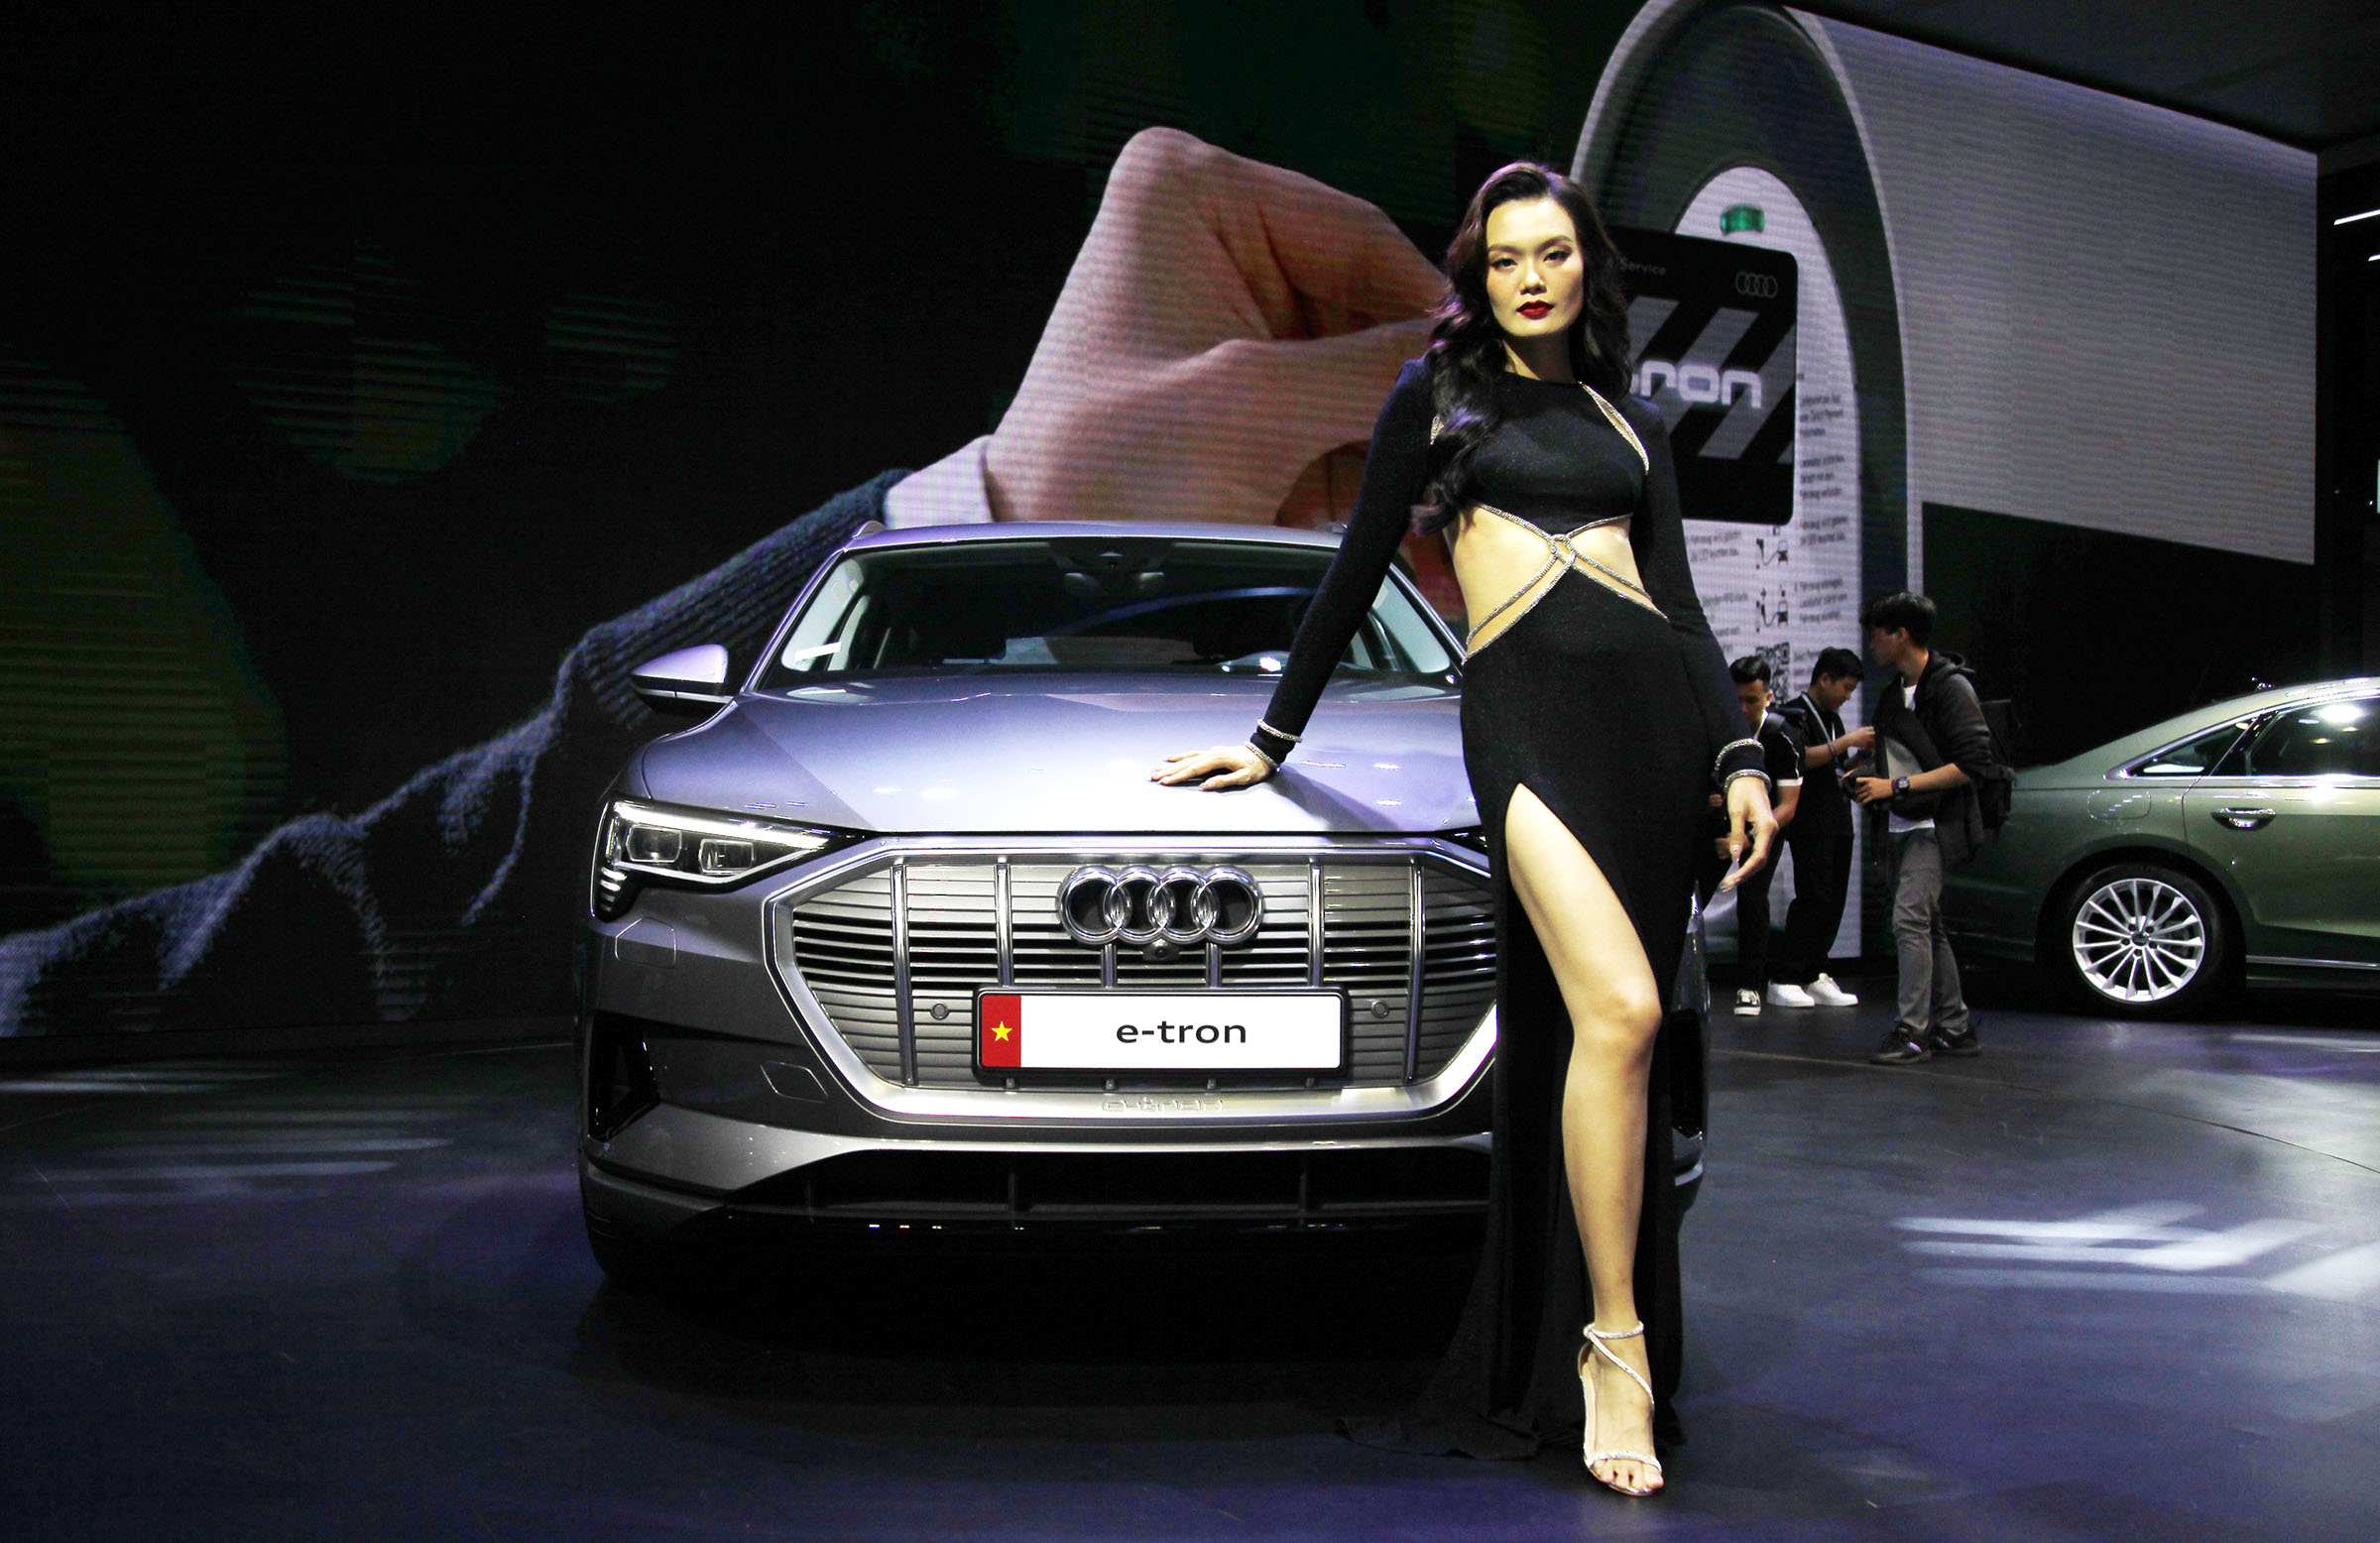 Triển lãm Ô tô Việt Nam 2022: Audi e-tron SUV có hai phiên bản, khởi điểm từ 2,97 tỷ đồng - Ảnh 1.